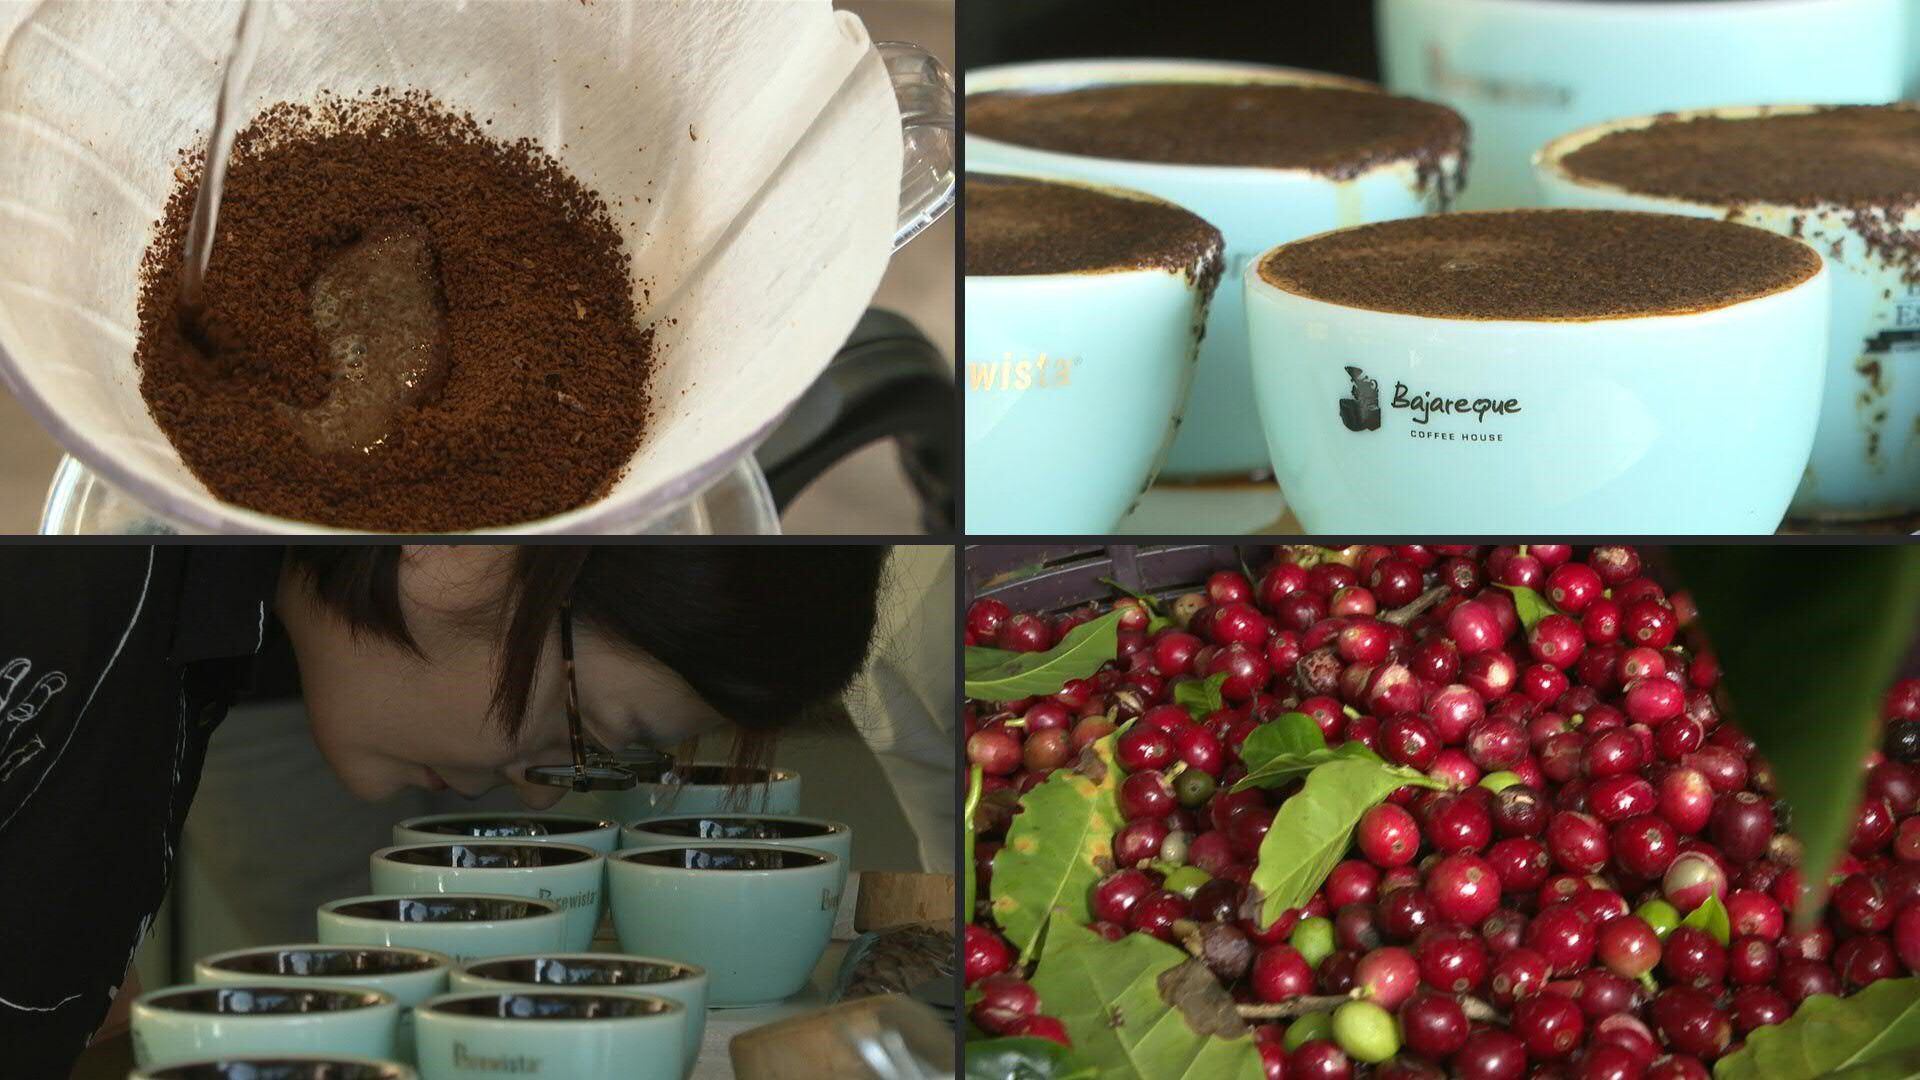 El consumo ideal contempla 400 mg de café al día (dos tazas) (AFP)